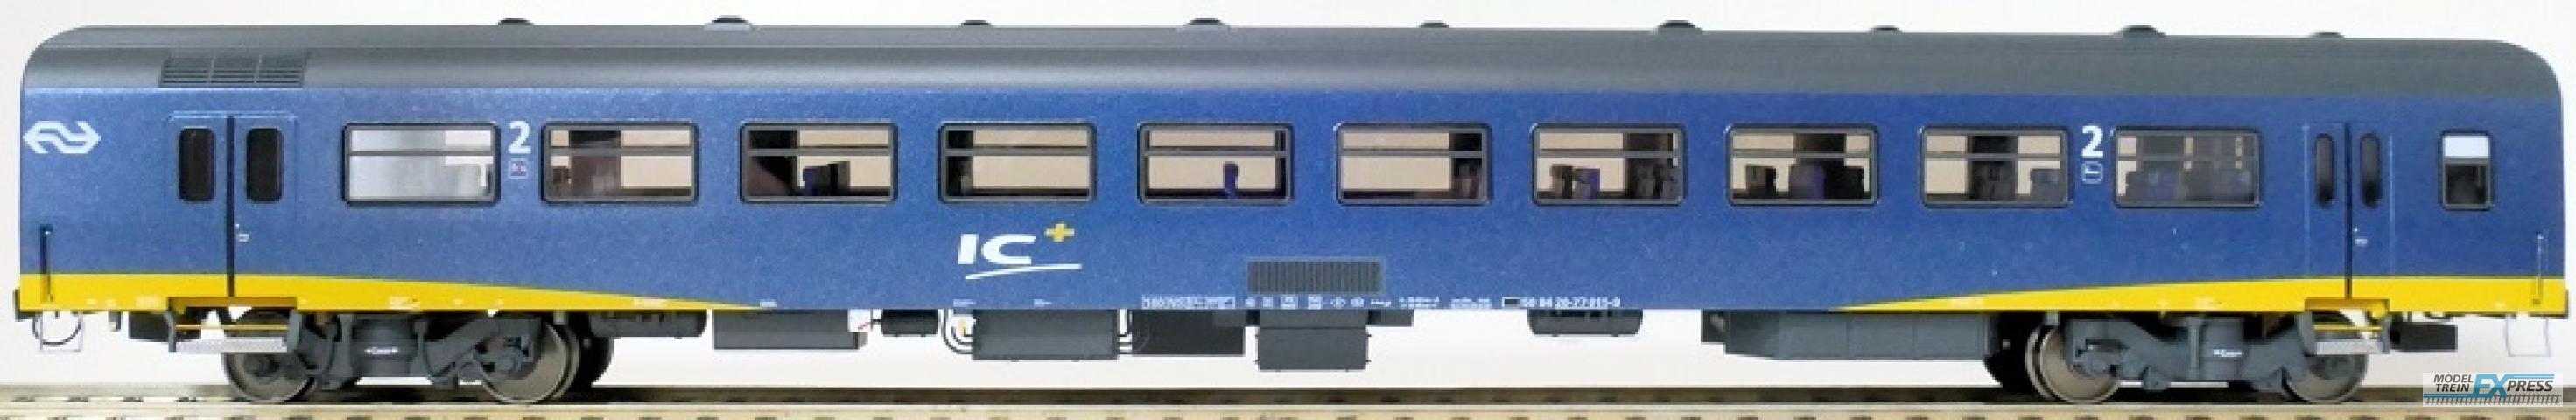 Exact-train 11181 NS ICR Plus Reisezugwagen B ( Farbe Blau) mit Beleuchtung und Figuren, Ep. IV